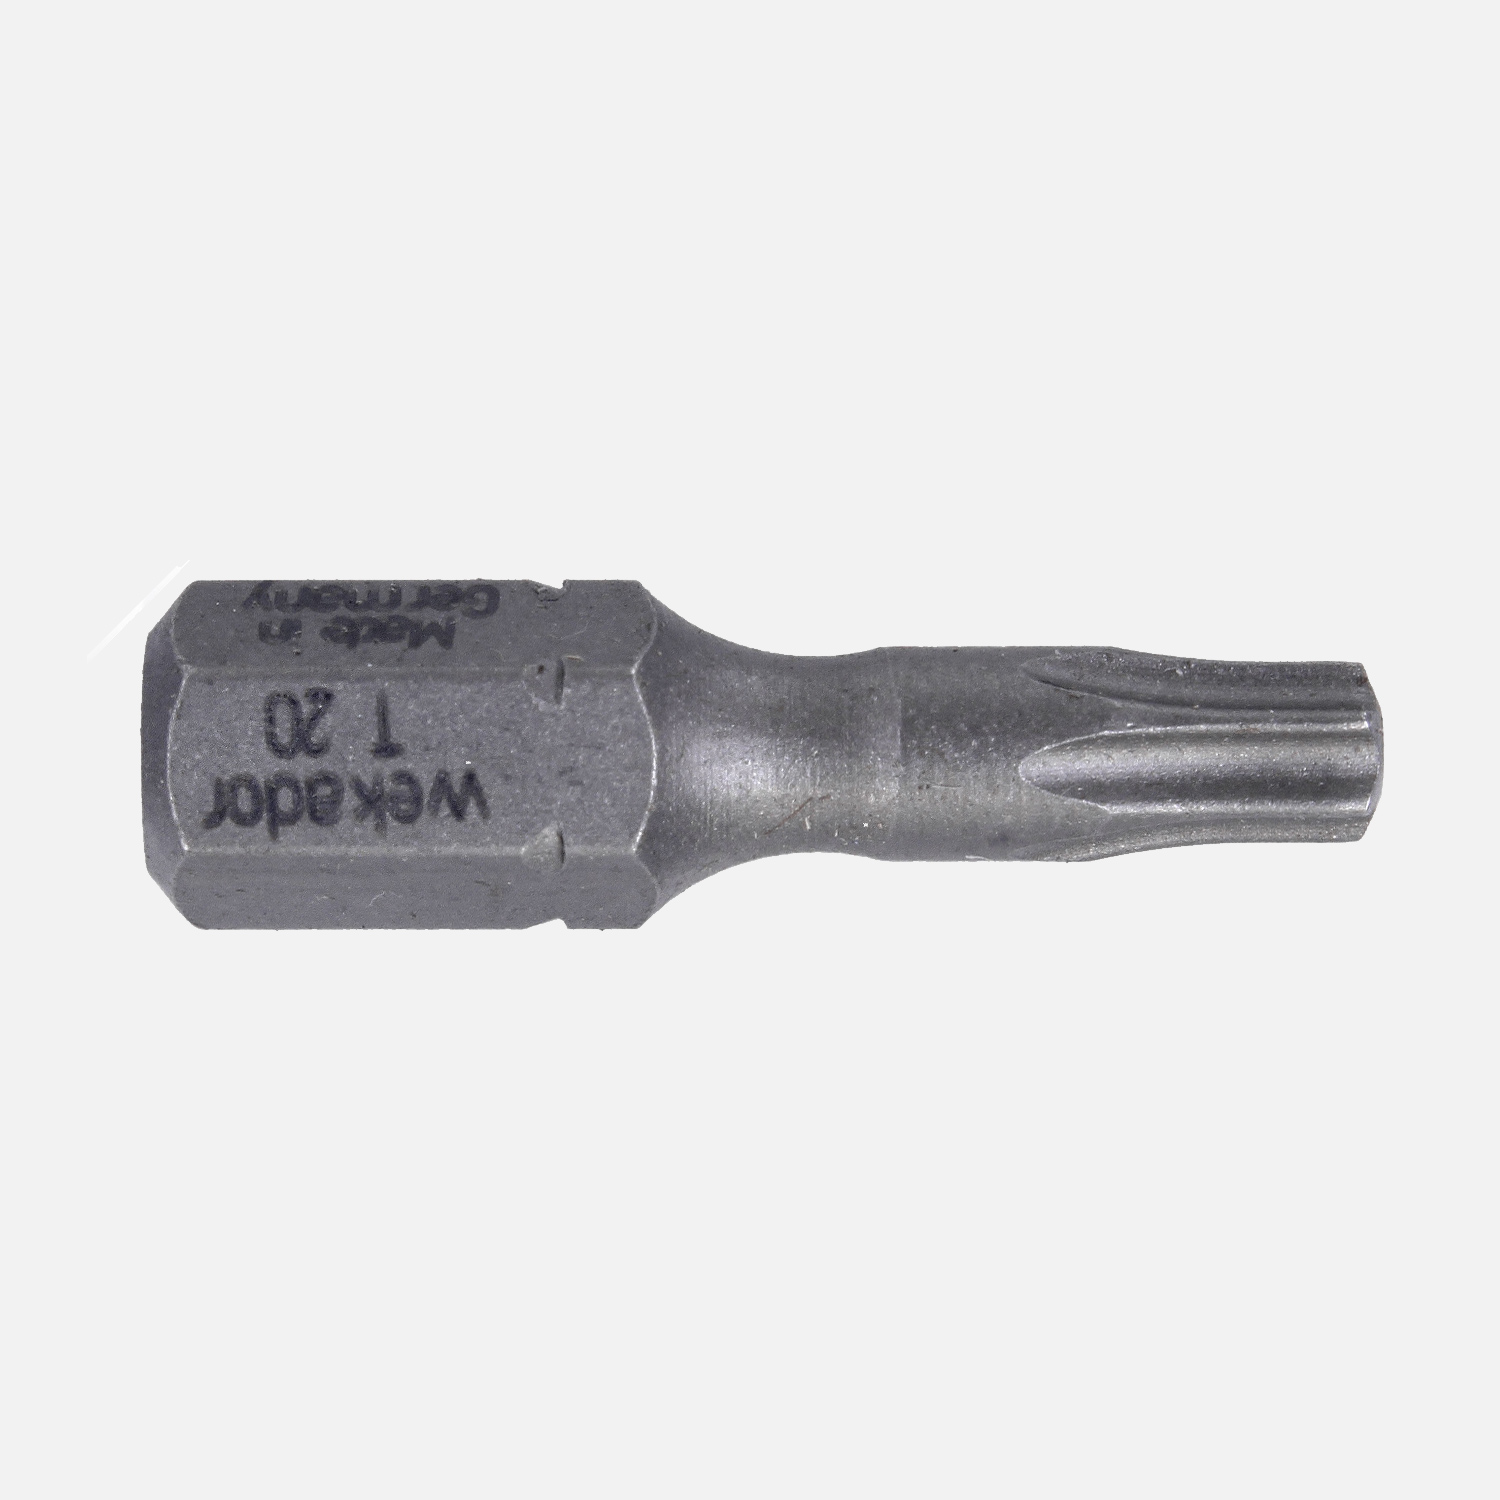 1 Torx Bit TX20 - 25mm Länge - 1/4" Antrieb - Industriequalität